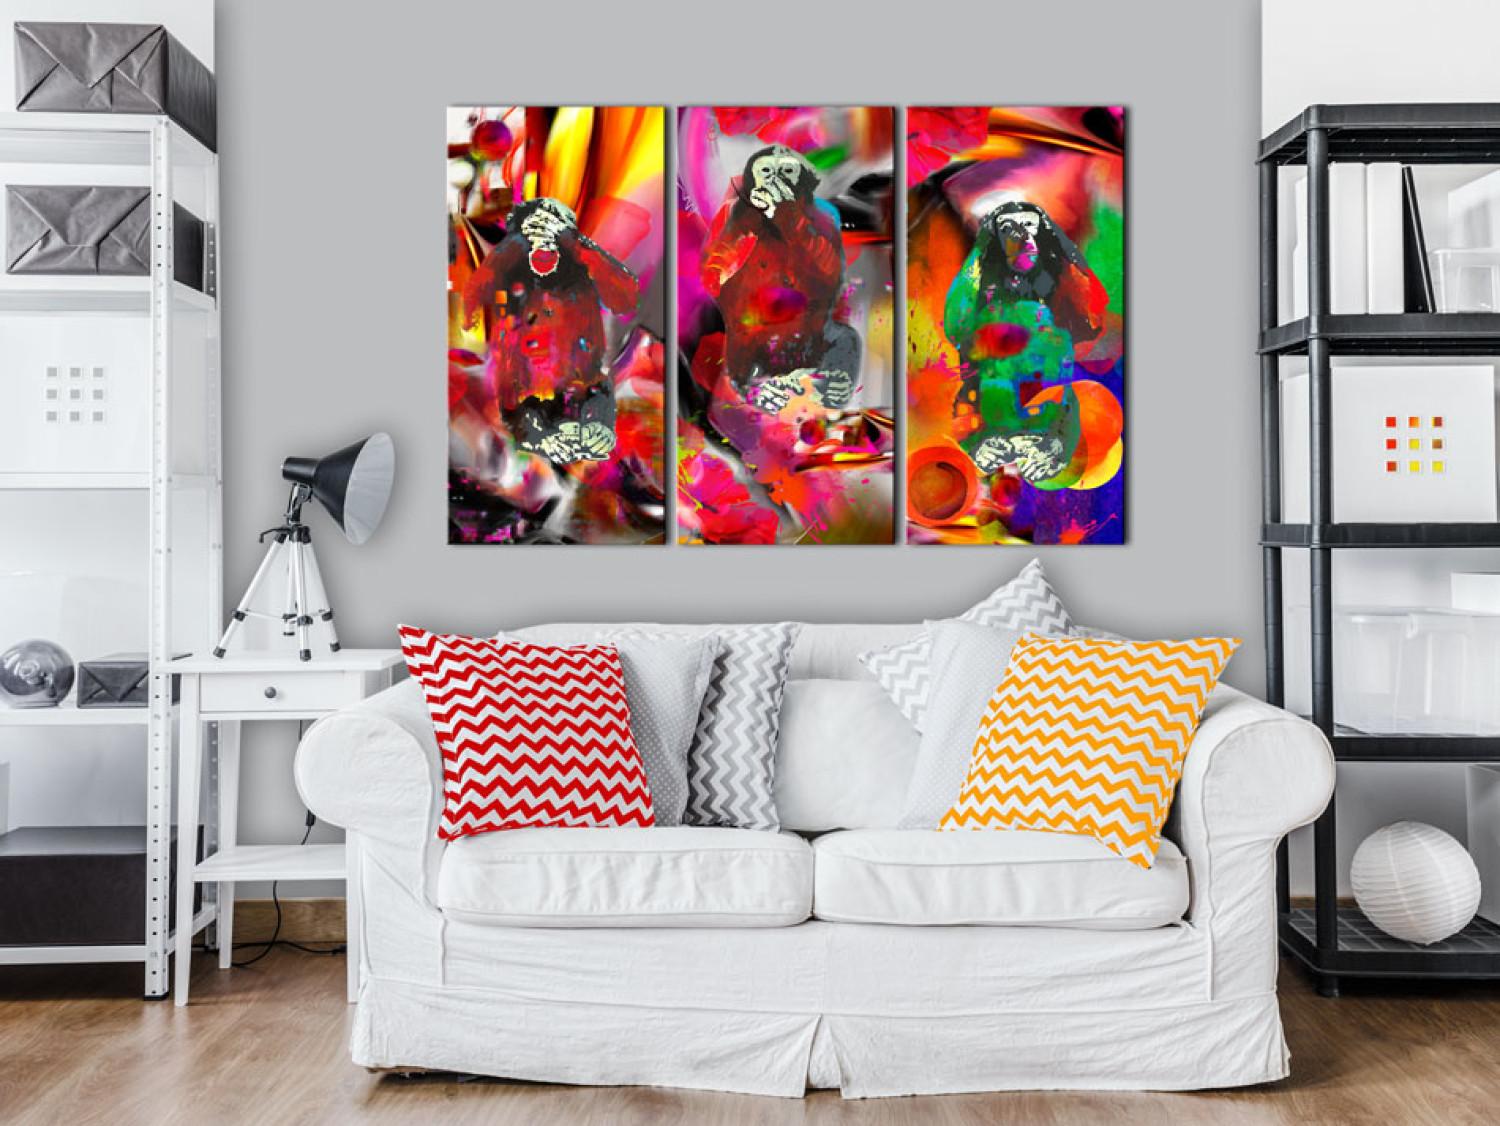 Cuadro decorativo Crazy Monkeys - triptych